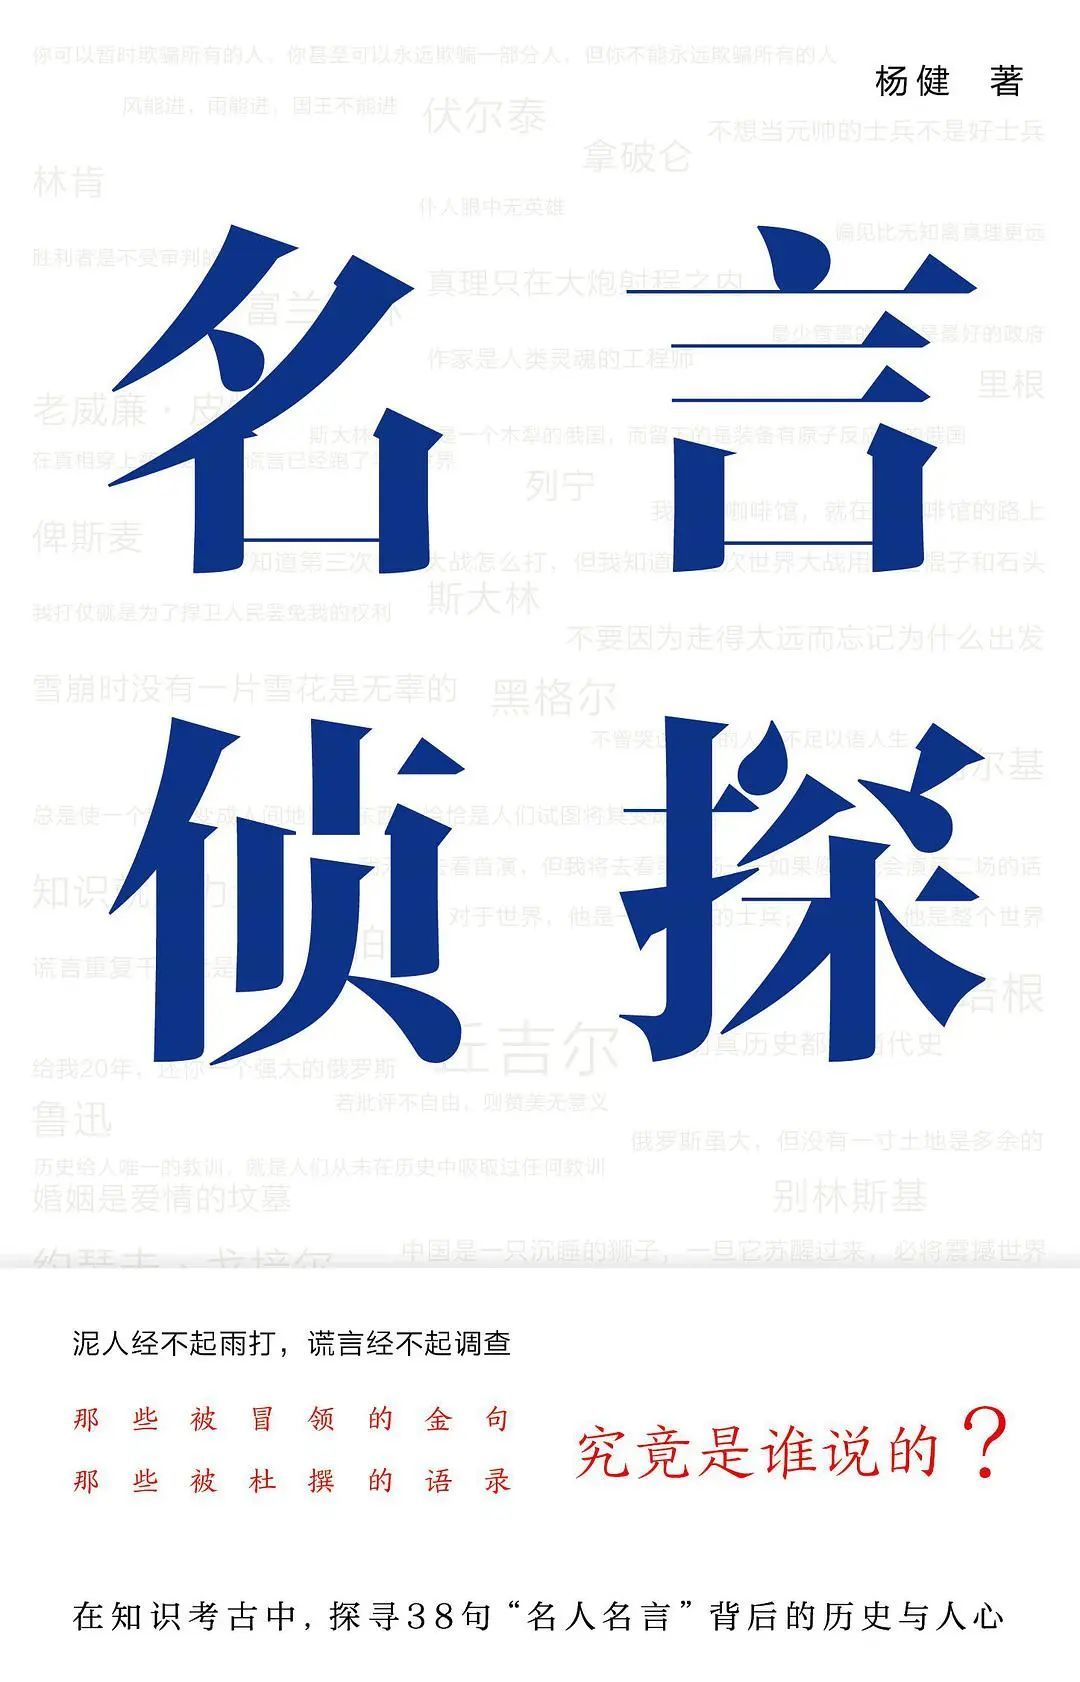 《名言侦探》，杨健著，南京大学出版社 2022年6月